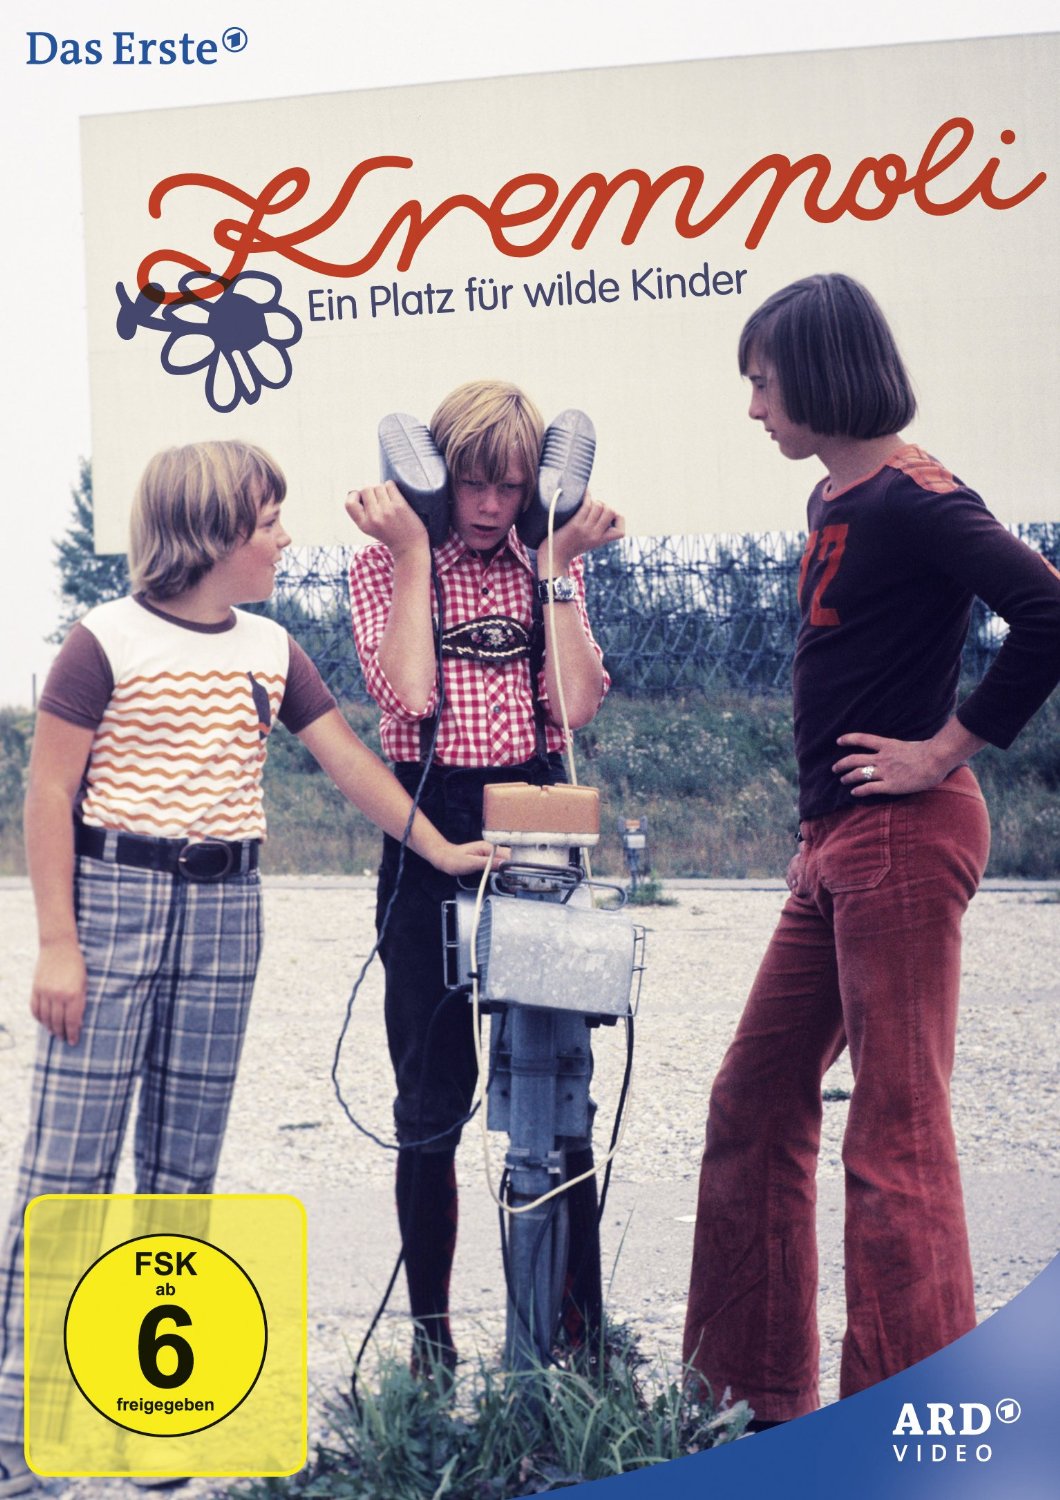 Krempoli - Ein Platz fur wilde Kinder (1975) All 10 Episodes 3